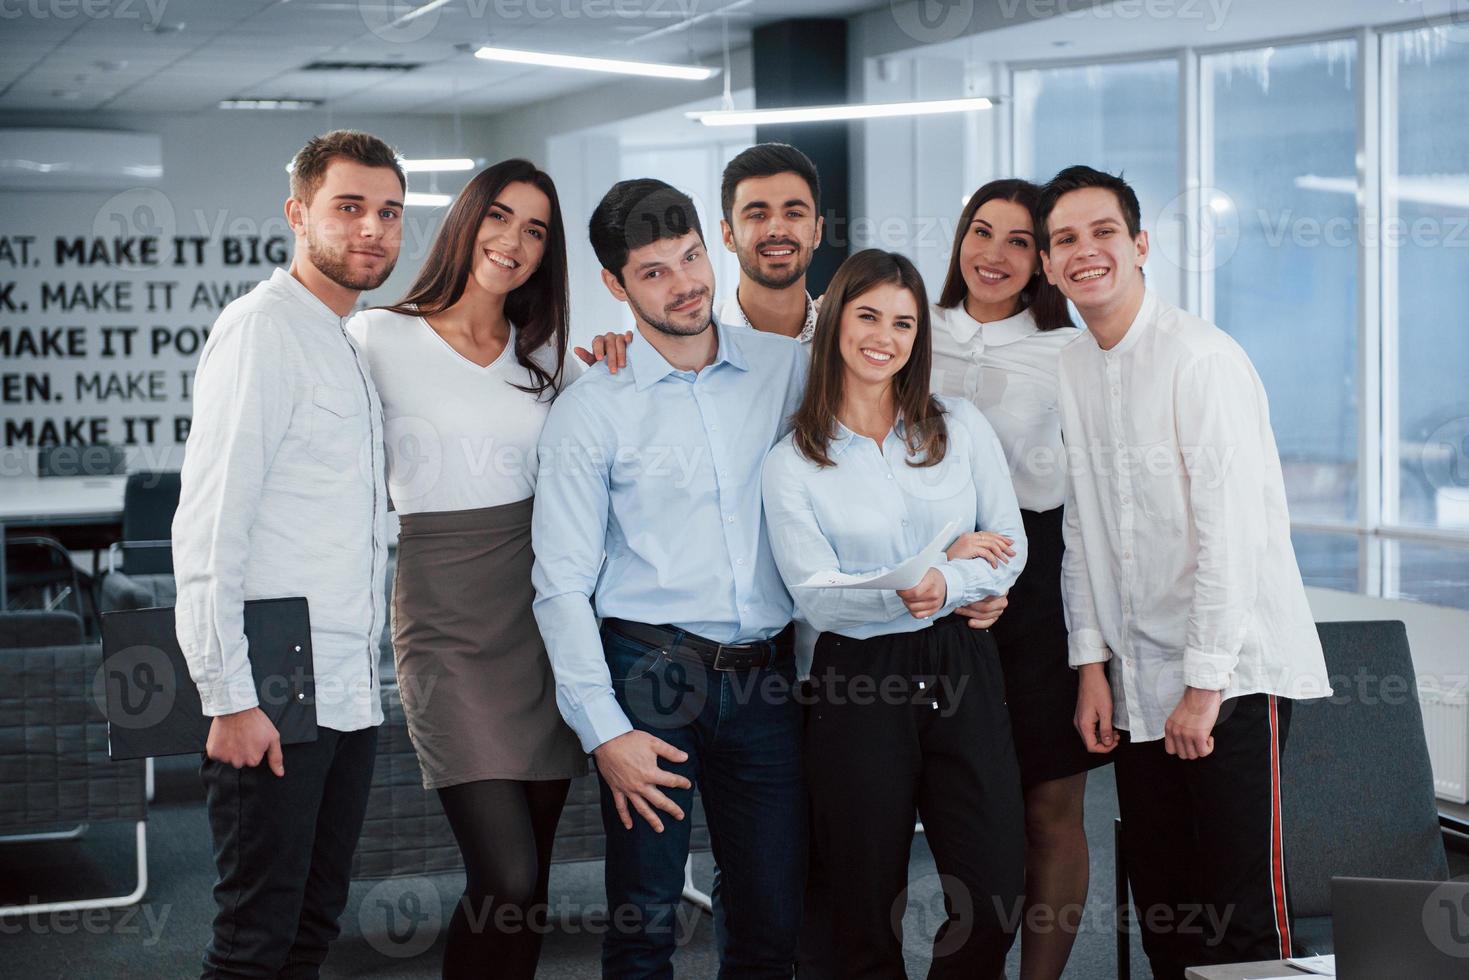 feliz em trabalhar juntos. retrato da equipe jovem em roupas clássicas no escritório moderno bem iluminado foto